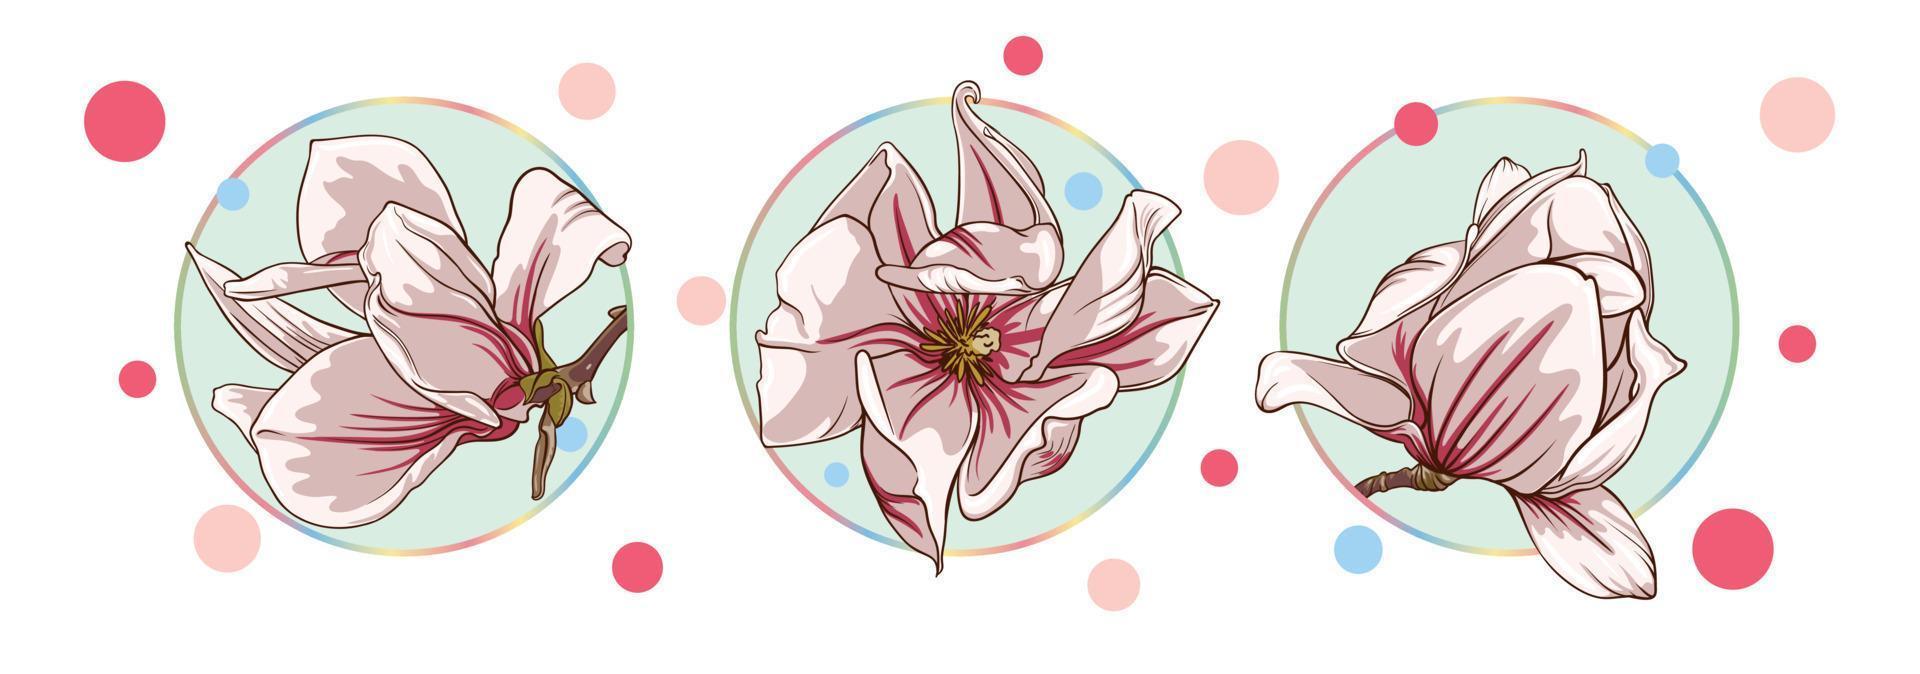 einstellen von Karten mit Magnolie und Lotus Blumen isoliert im ein Türkis Kreis auf ein Weiß Hintergrund mit bunt Punkte. Grün Blätter, öffnen Knospen, geschlossen Knospen, Rosa und lila Blumen vektor